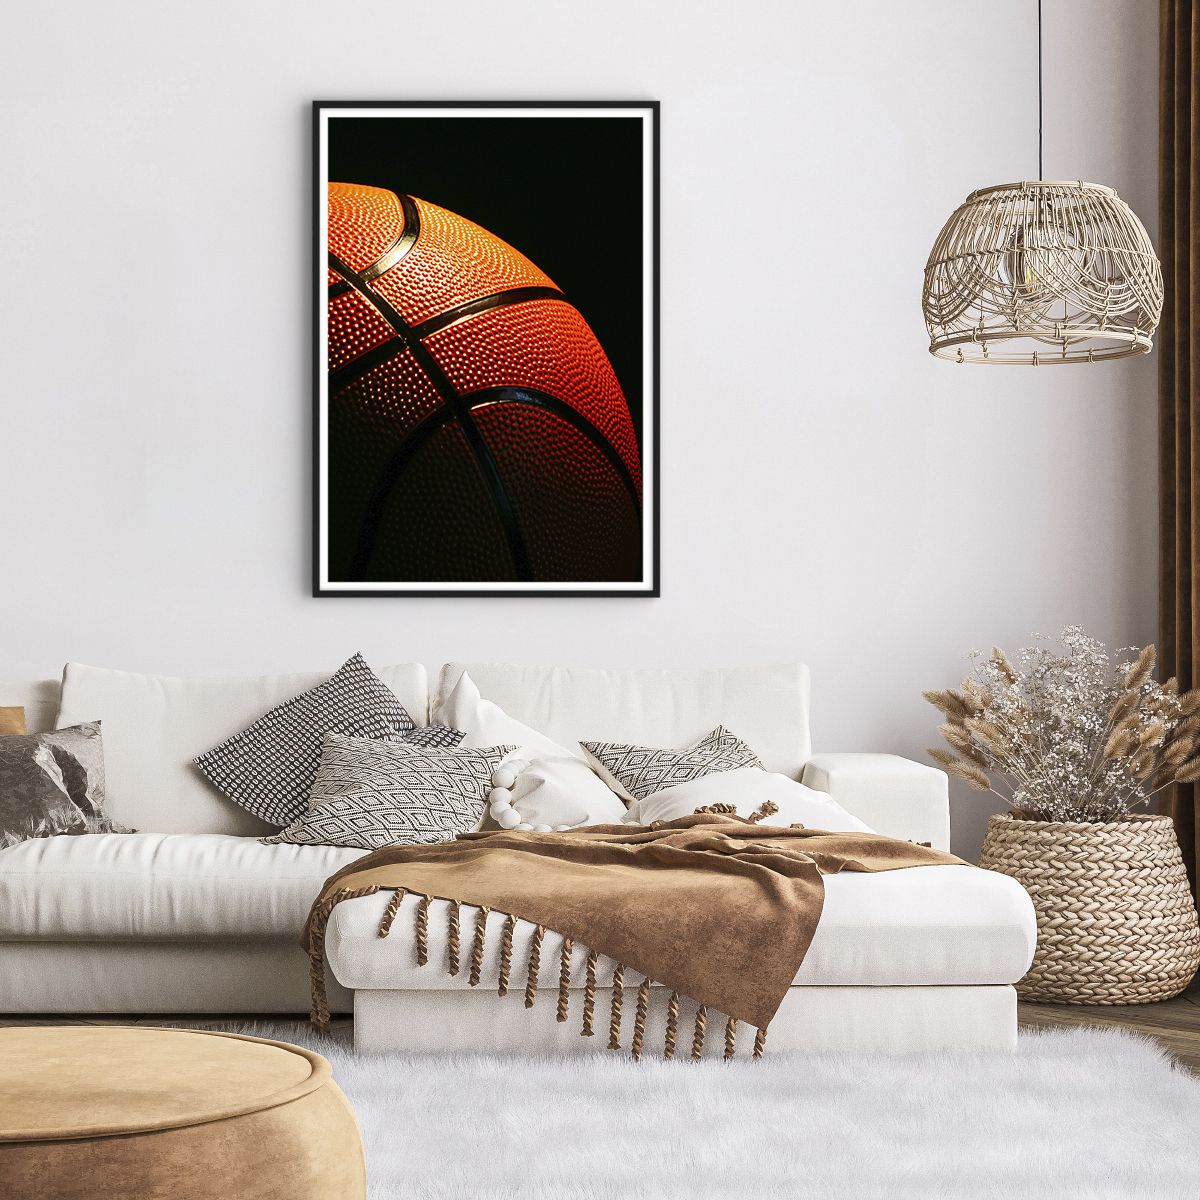 Affiche dans un cadre noir Sport, Affiche dans un cadre noir Basket, Affiche dans un cadre noir Basket, Affiche dans un cadre noir Loisir, Affiche dans un cadre noir Rivalité